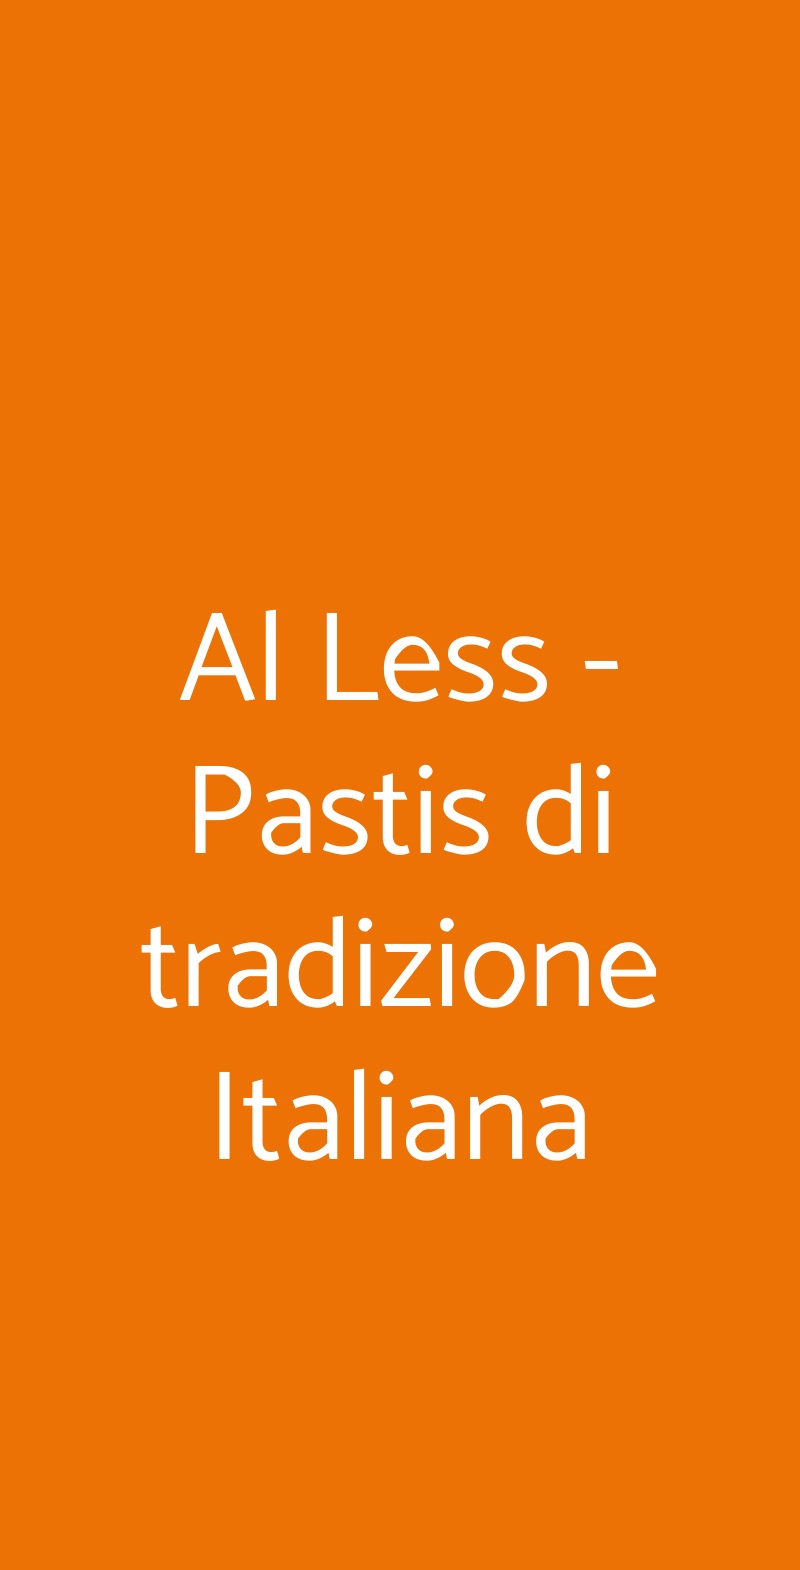 Al Less - Pastis di tradizione Italiana Milano menù 1 pagina